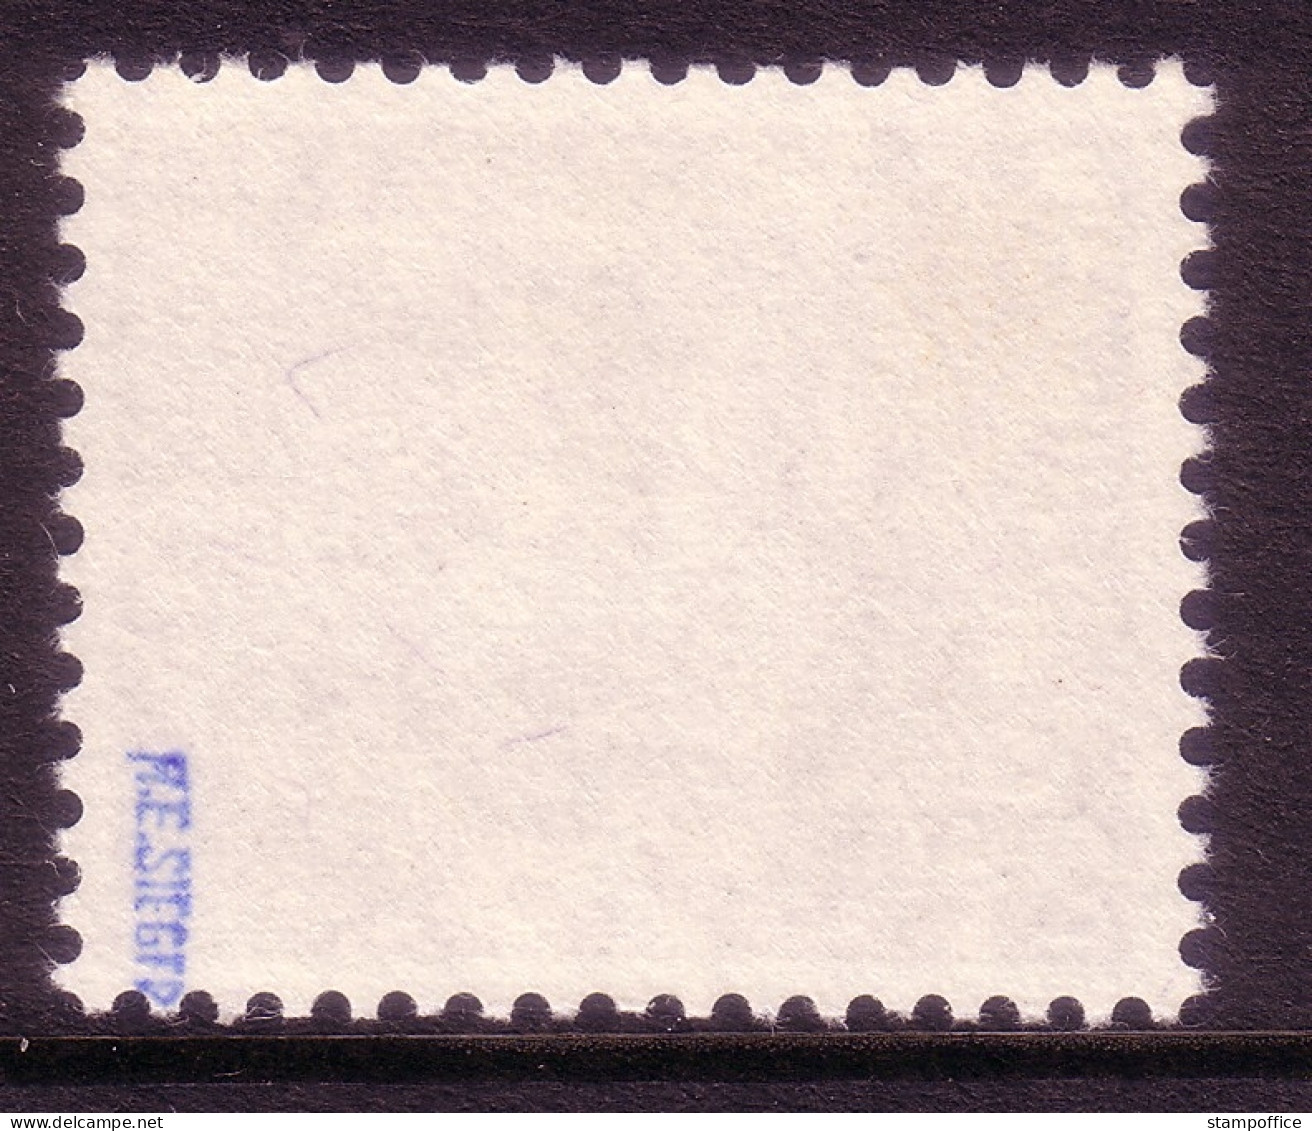 SCHWEIZ MI-NR. 1057 X POSTFRISCH(MINT) TURMHAHN 1984 GEPRÜFT SIEGER - Nuevos